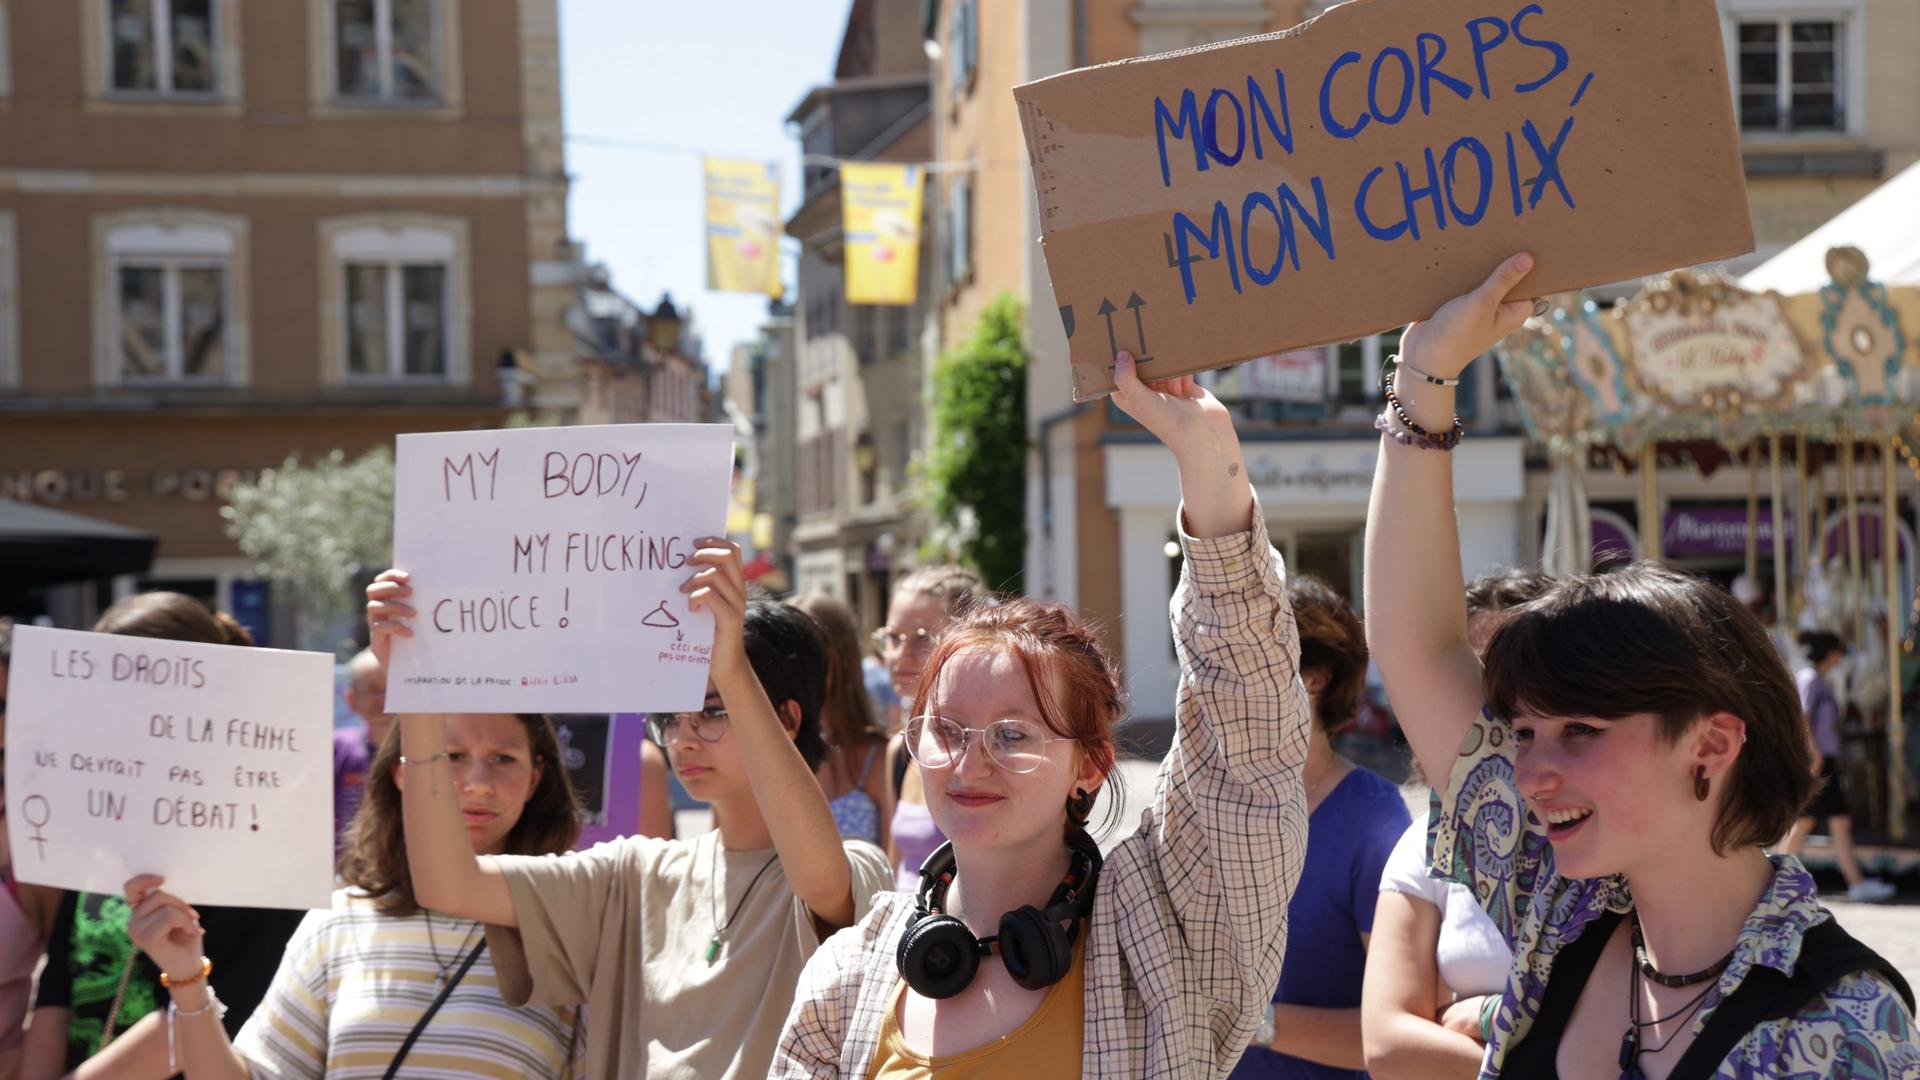 Mein Körper, meine Entscheidung: Junge Frauen bei einer Demo für das Recht auf Abtreibung in Mulhouse. Sie halten Schilder in die Höhe, auf denen unter anderem "Mon corps, mon choix" steht, also "Mein Körper, meine Entscheidung". 